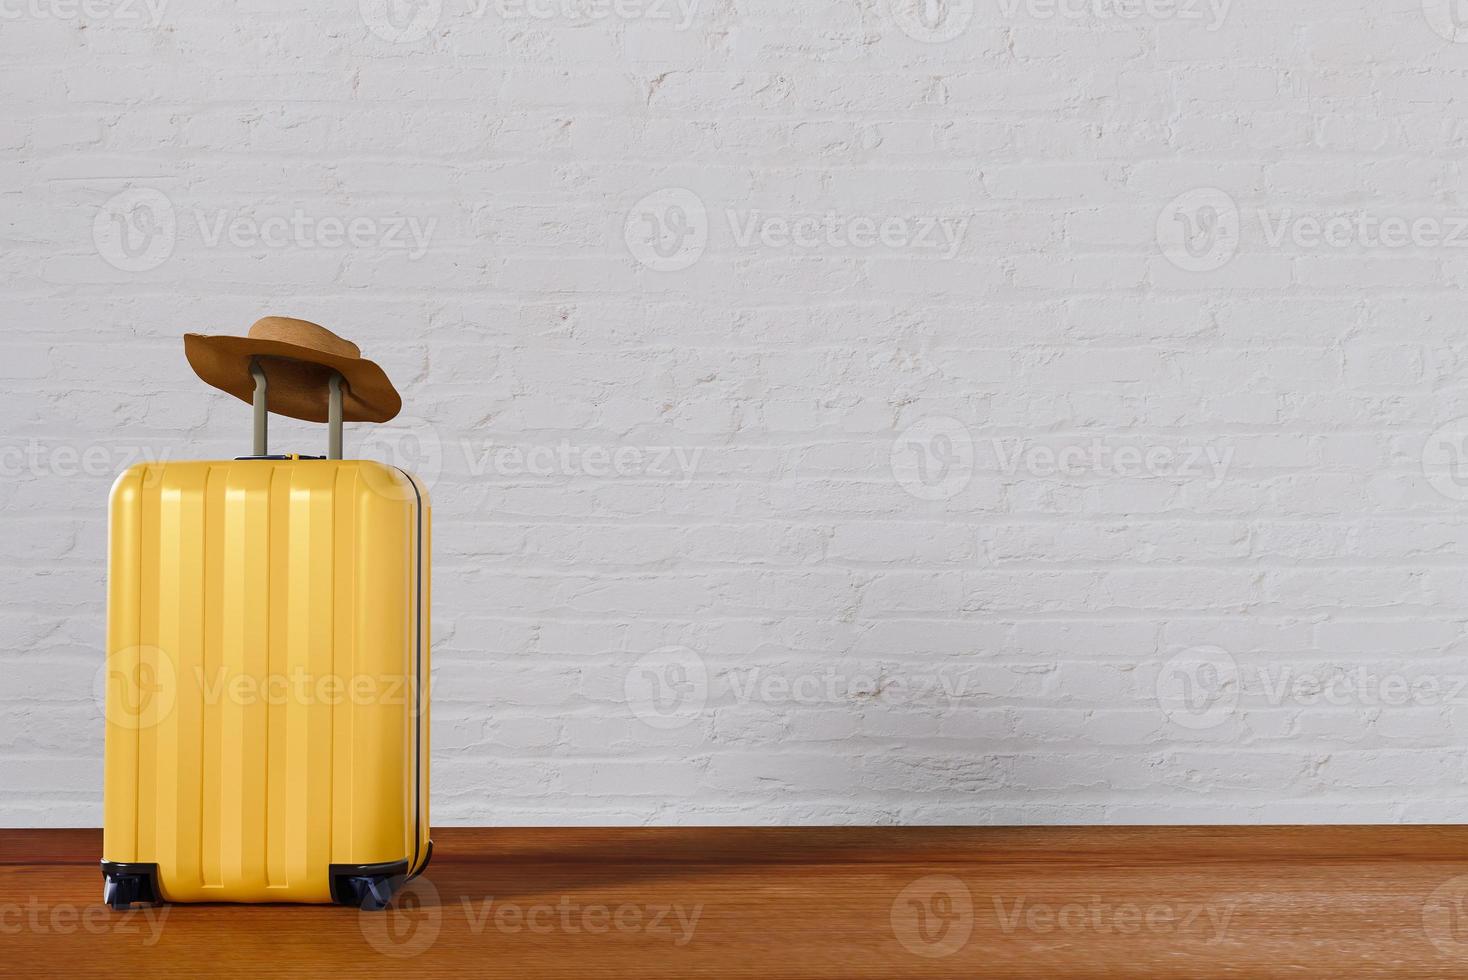 sombrero de equipaje amarillo en la parte superior diseño de fondo de banner de turismo de viajes de verano en pared blanca piso de madera vacaciones de ocio imagen de representación 3d foto